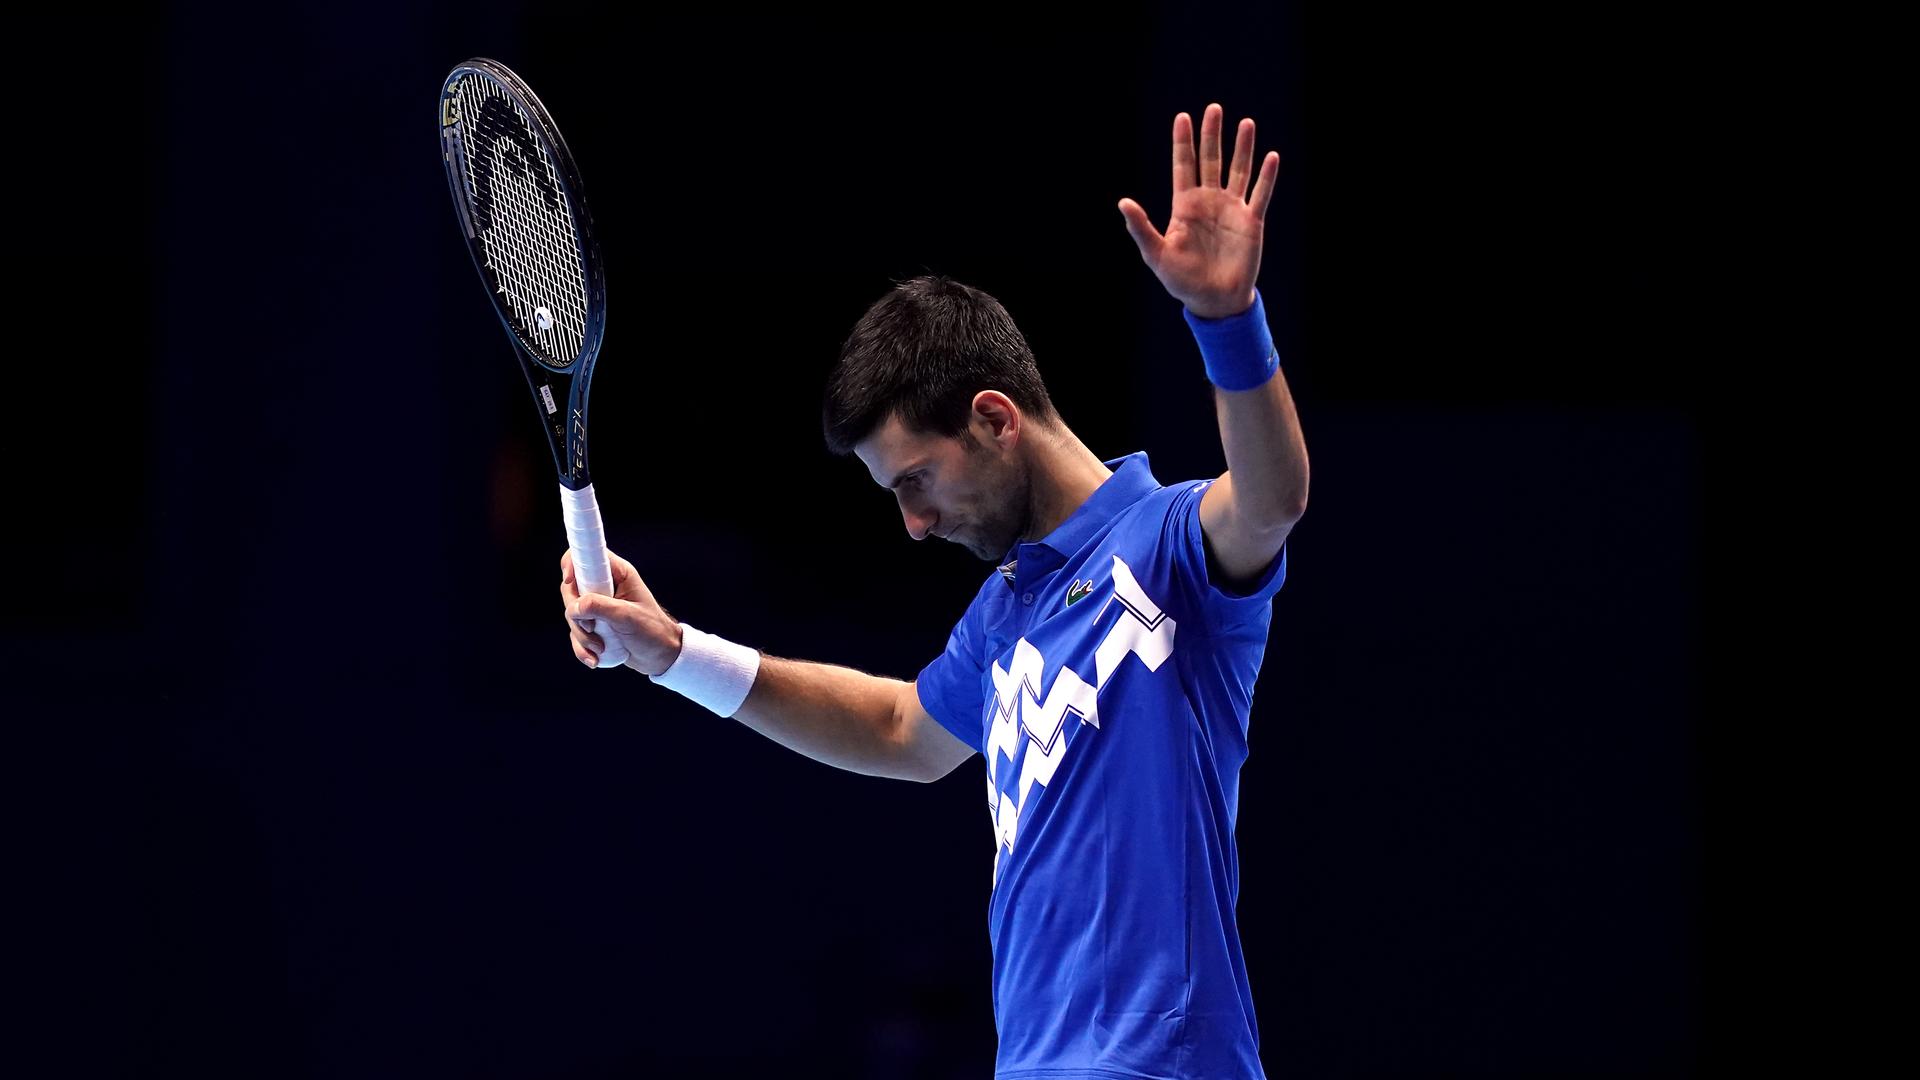 Tennisspieler Novak Djokovic - Teilnahme an weiteren Grand-Slam-Turnieren fraglich